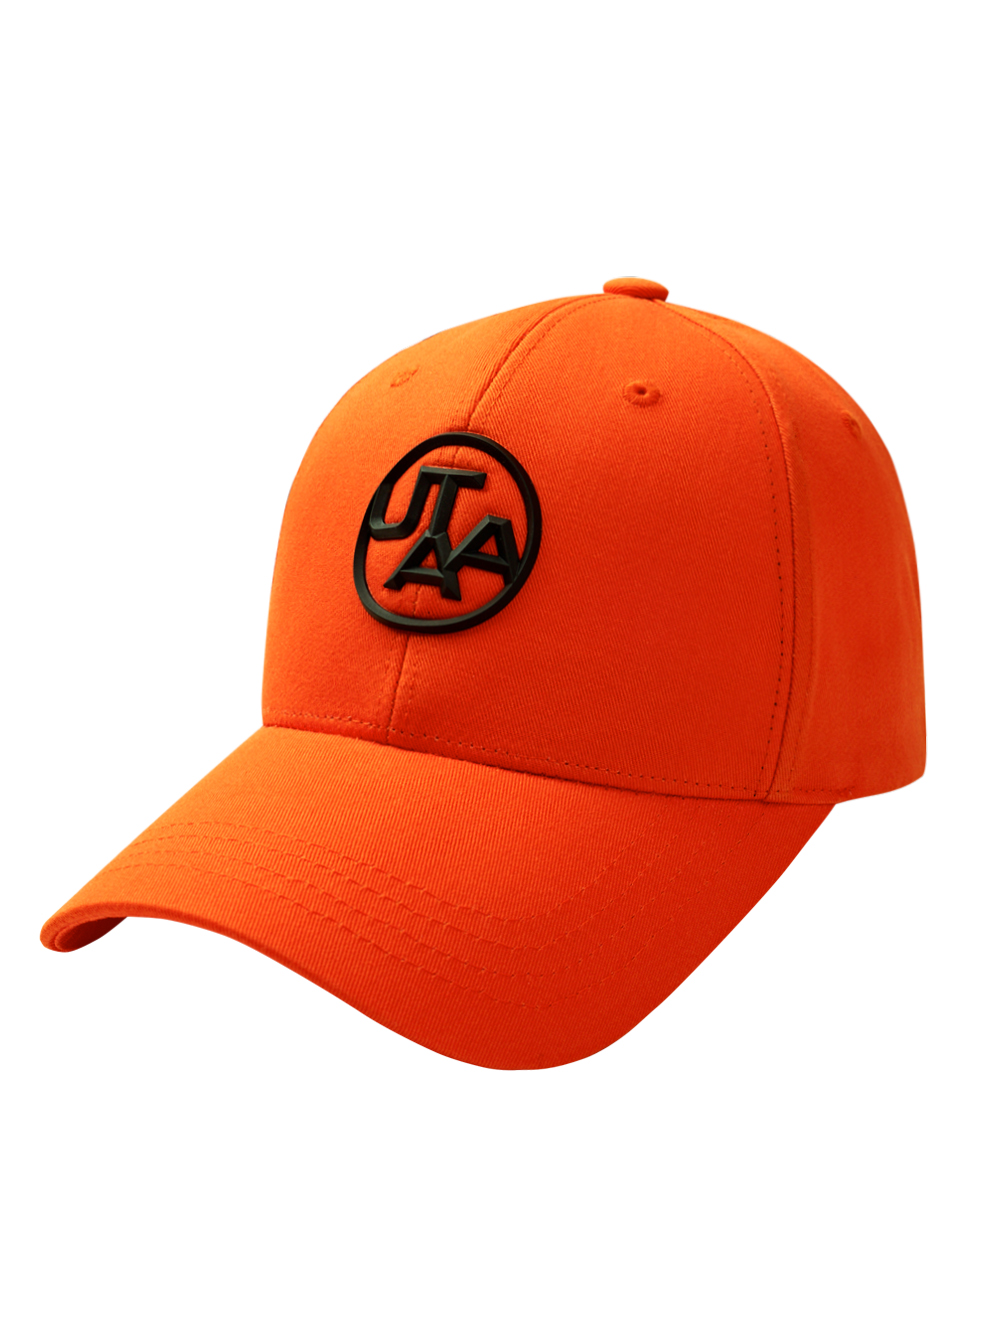 UTAA Figure Emblem Color Cap : Orange (UC0GCU118OR)